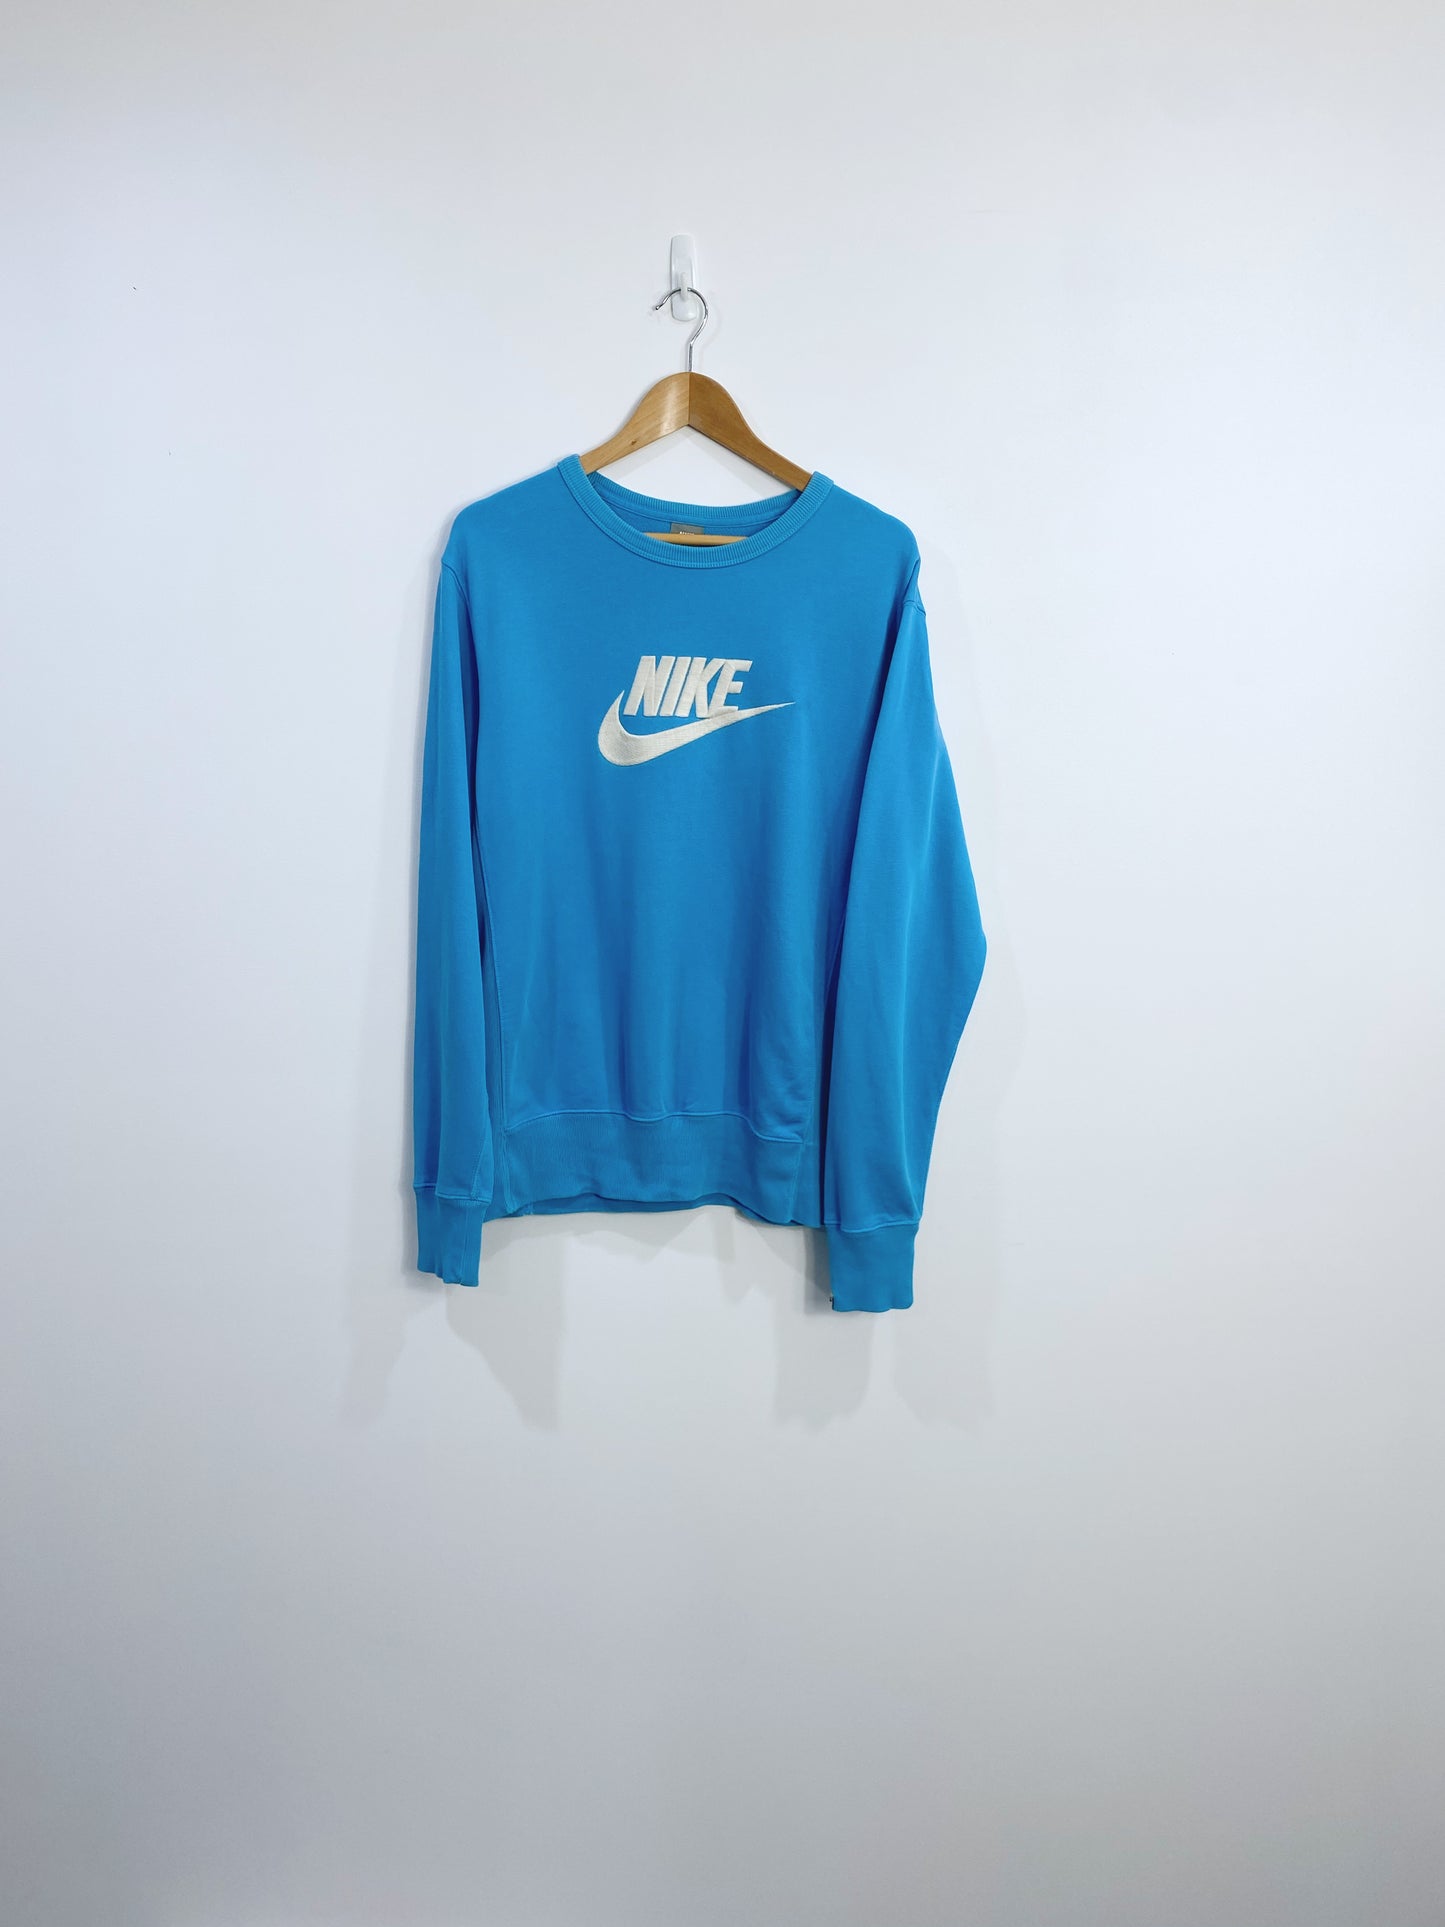 Vintage Nike Embroidered Sweatshirt L